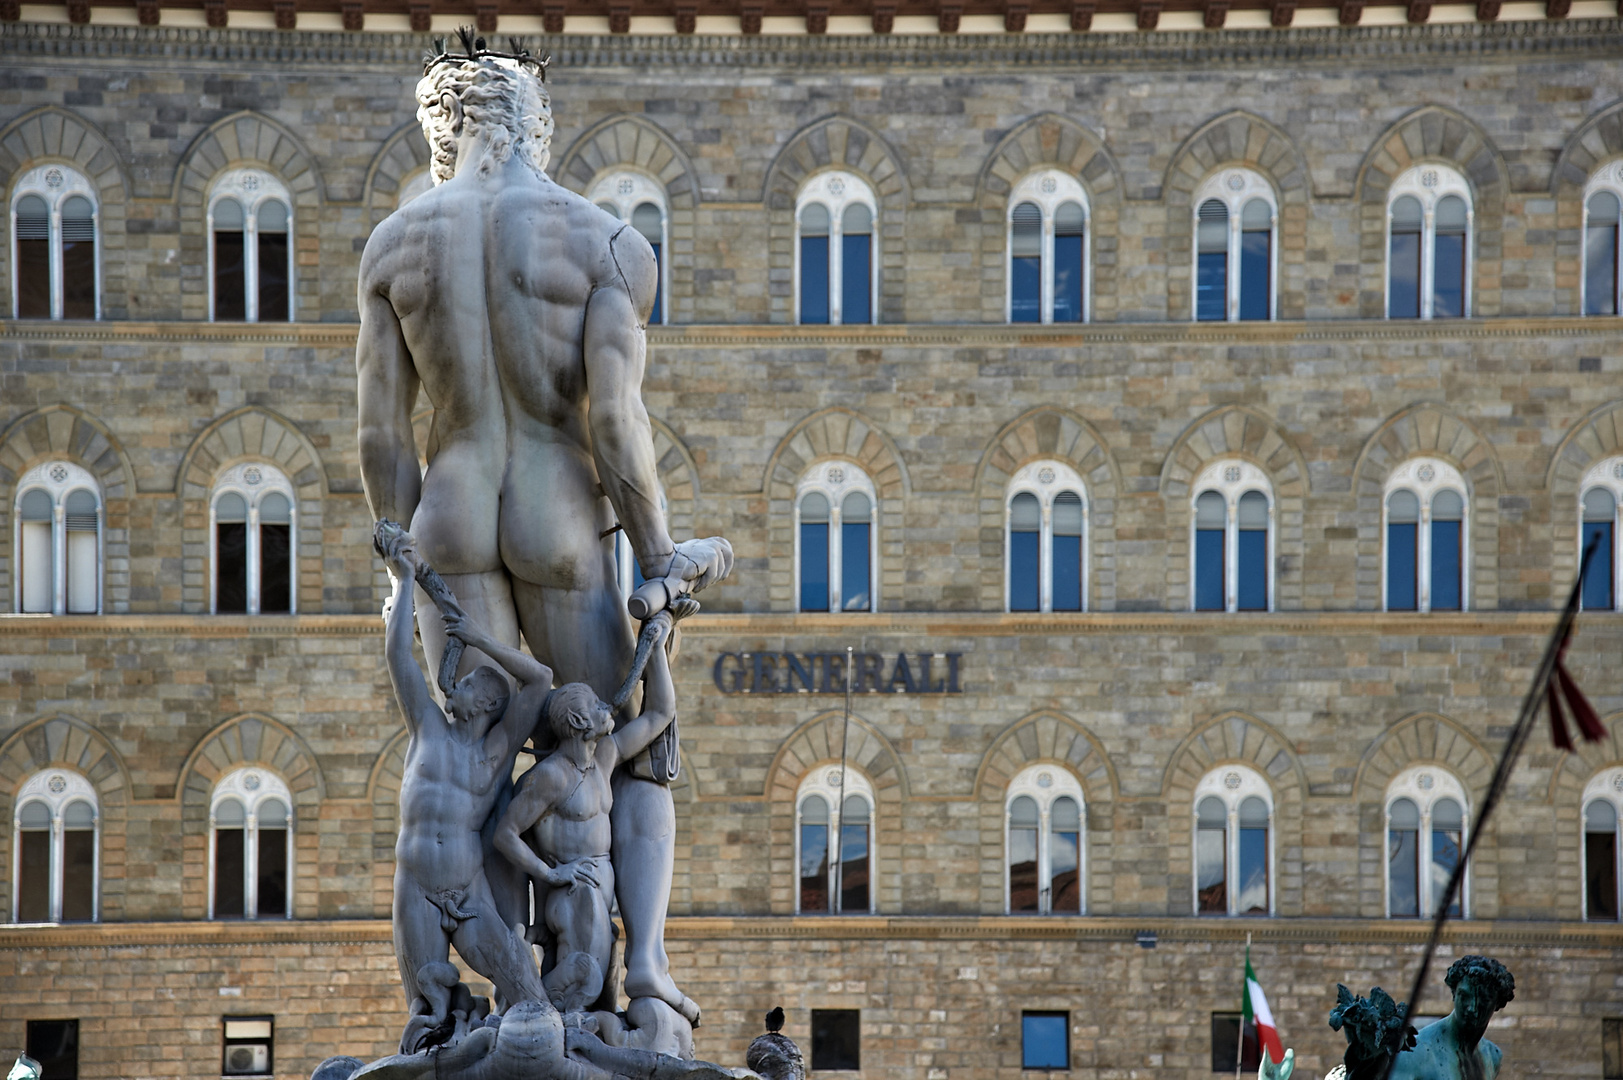 Florenz I